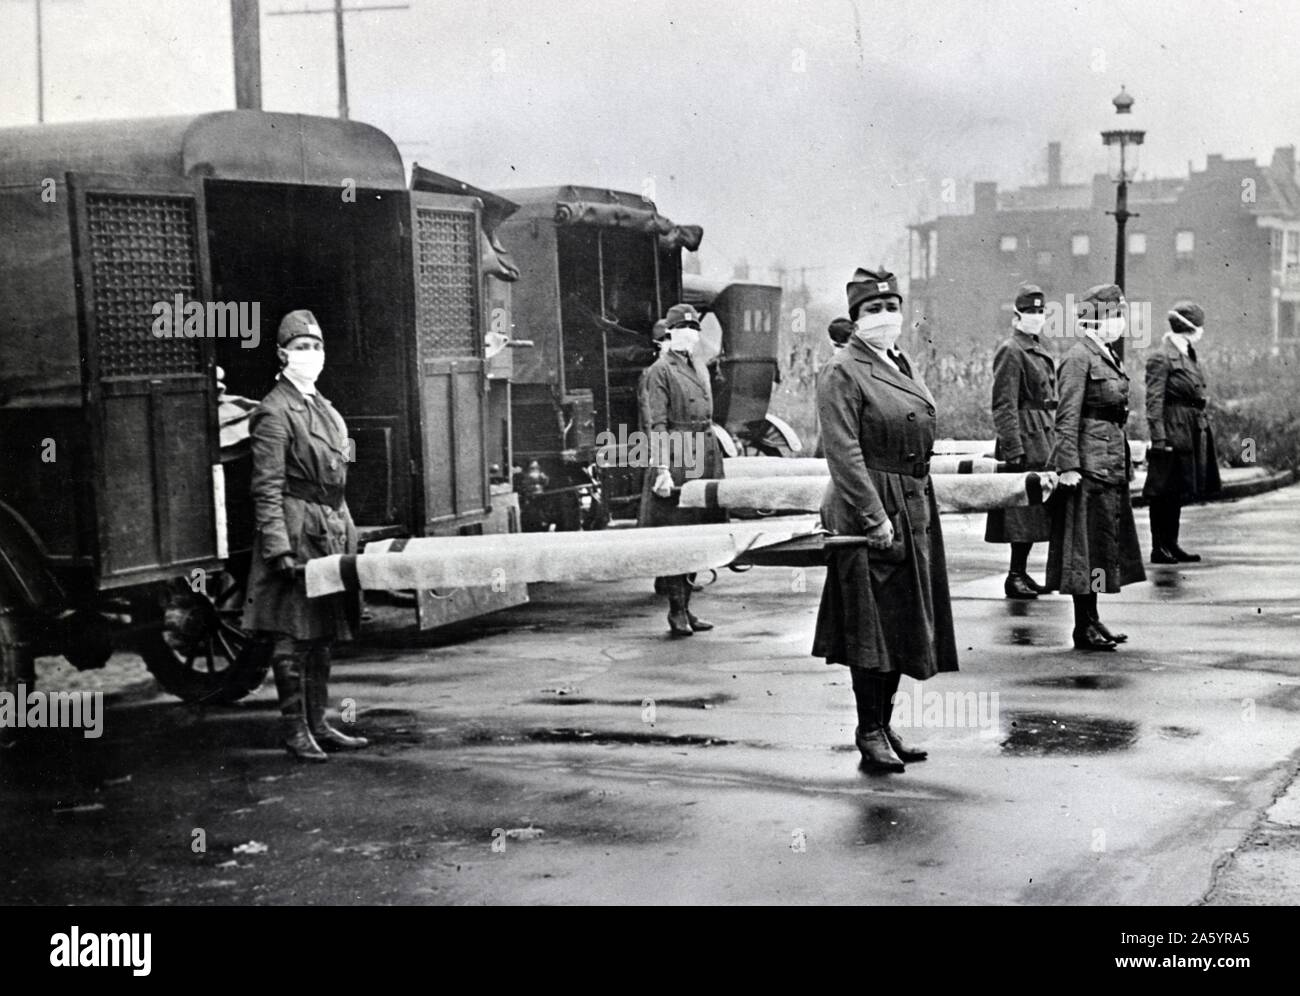 Saint Louis (Missouri), Croix rouge, corps de moteur de service en cours de l'épidémie de grippe espagnole, 1918. La photographie montre le port du masque woman holding civières à dos des ambulances. Banque D'Images